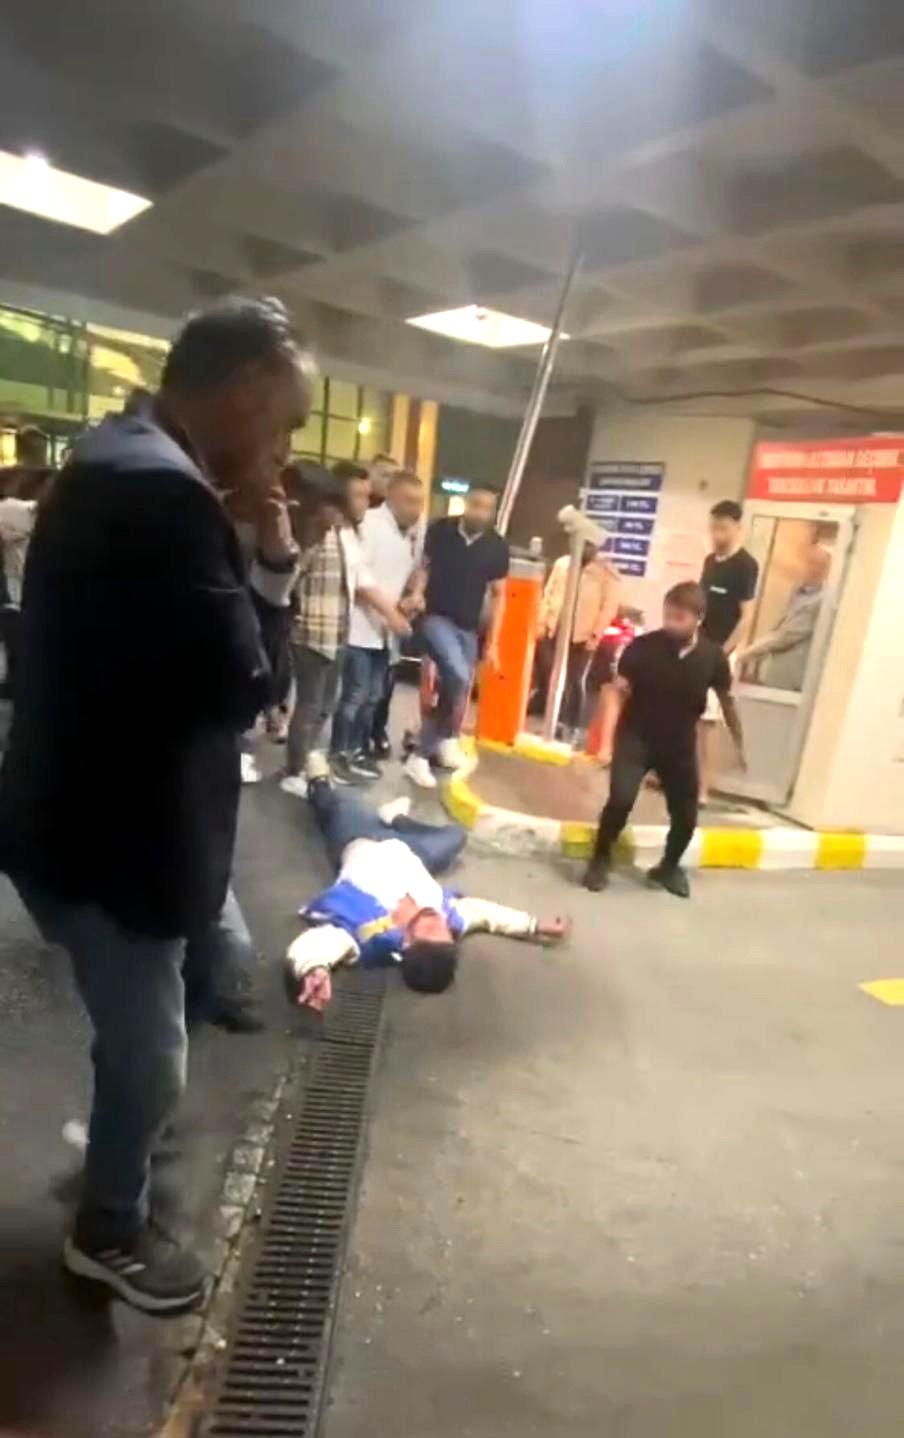 İstanbul’da yaşanan tekme ve yumruklu kavgalar kamerada: Kız arkadaşına laf atan şahısları dövdü